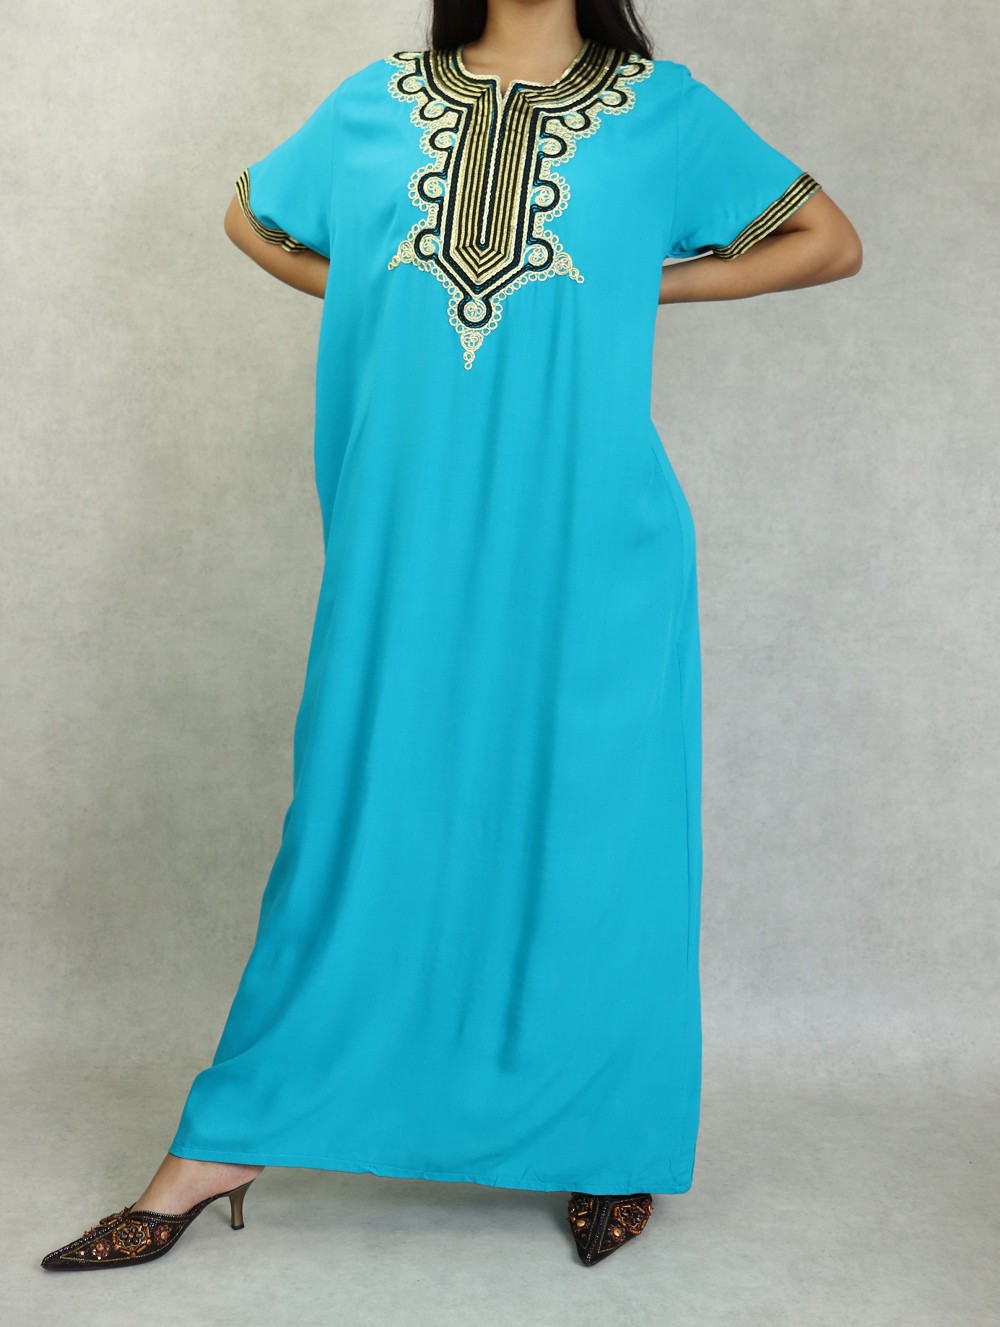 Robe orientale longue pour femme avec broderies dorées - Couleur bleu  turquoise